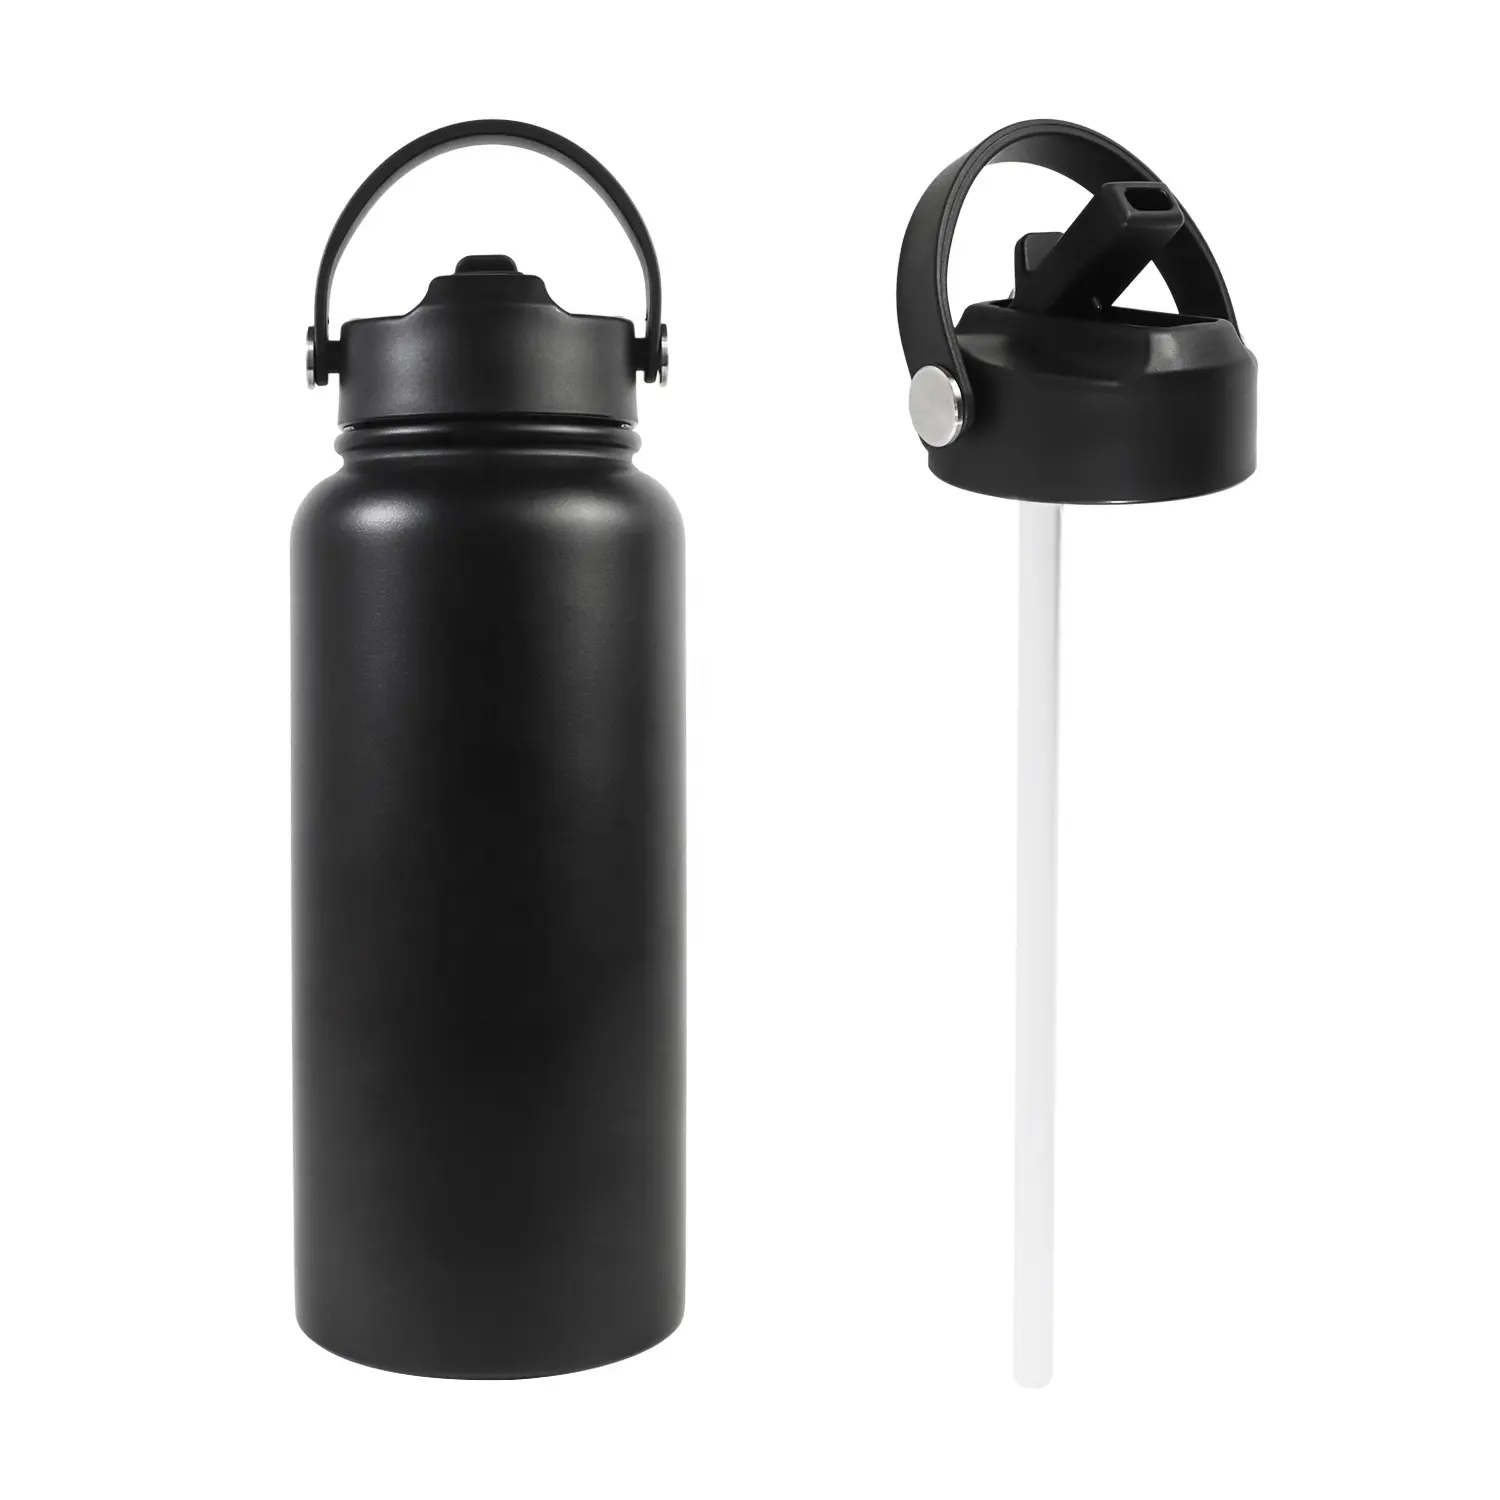 Schweiß feste schwarze 32oz doppelwandige vakuum isolierte Edelstahl-Wasser flasche mit Stroh deckel, um Getränke kalt heiß zu halten